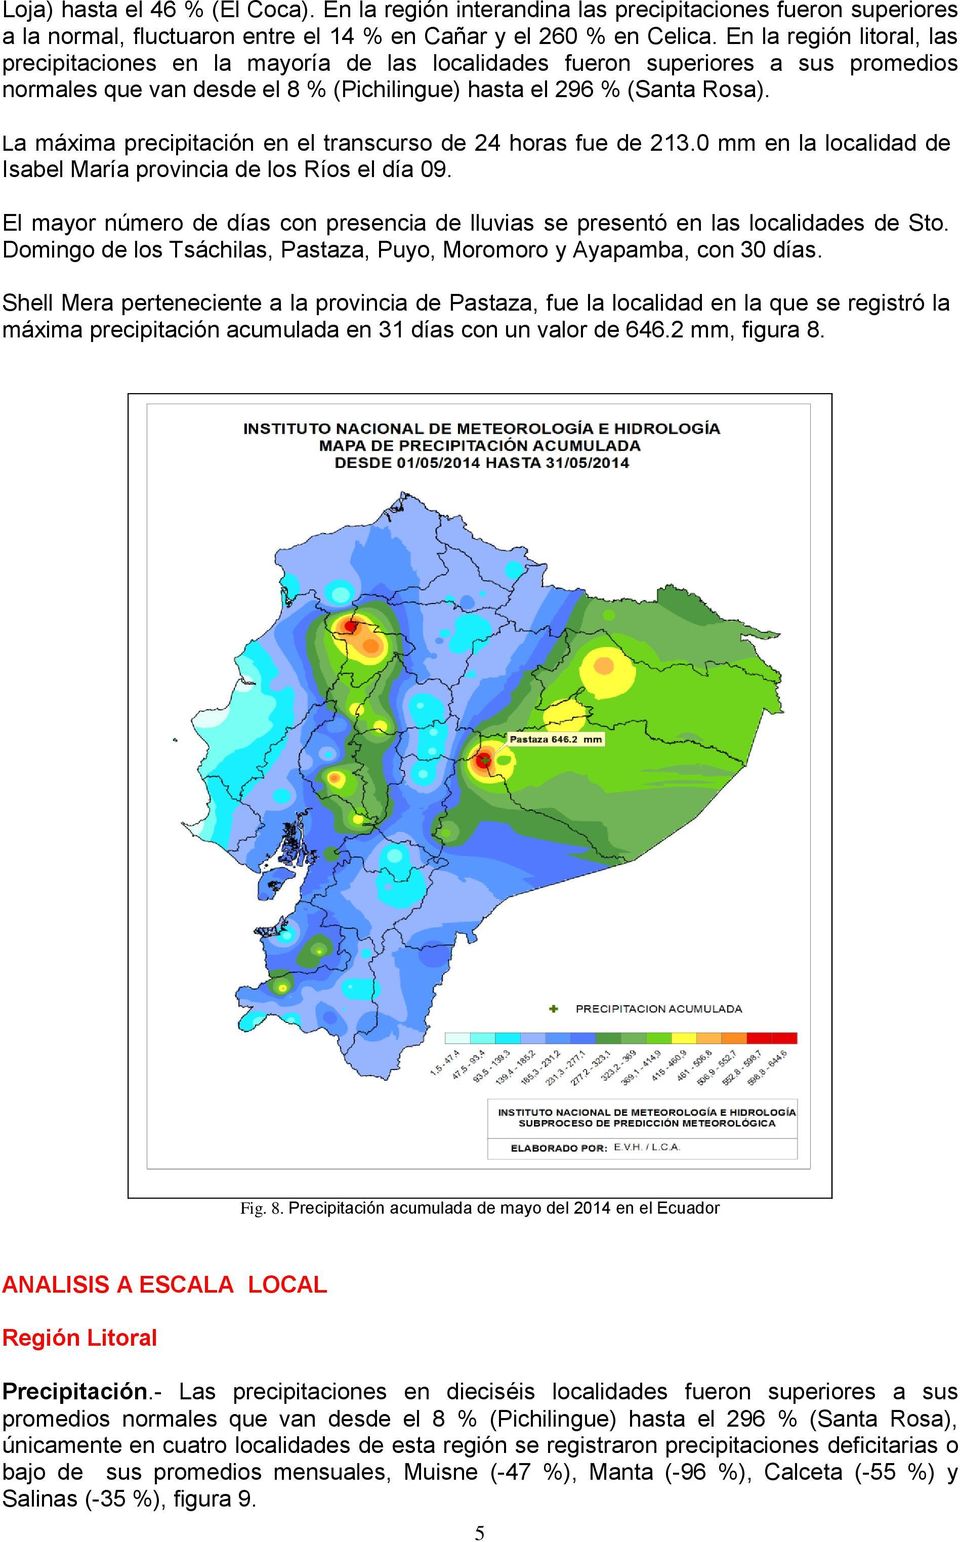 La máxima precipitación en el transcurso de 24 horas fue de 213.0 mm en la localidad de Isabel María provincia de los Ríos el día 09.